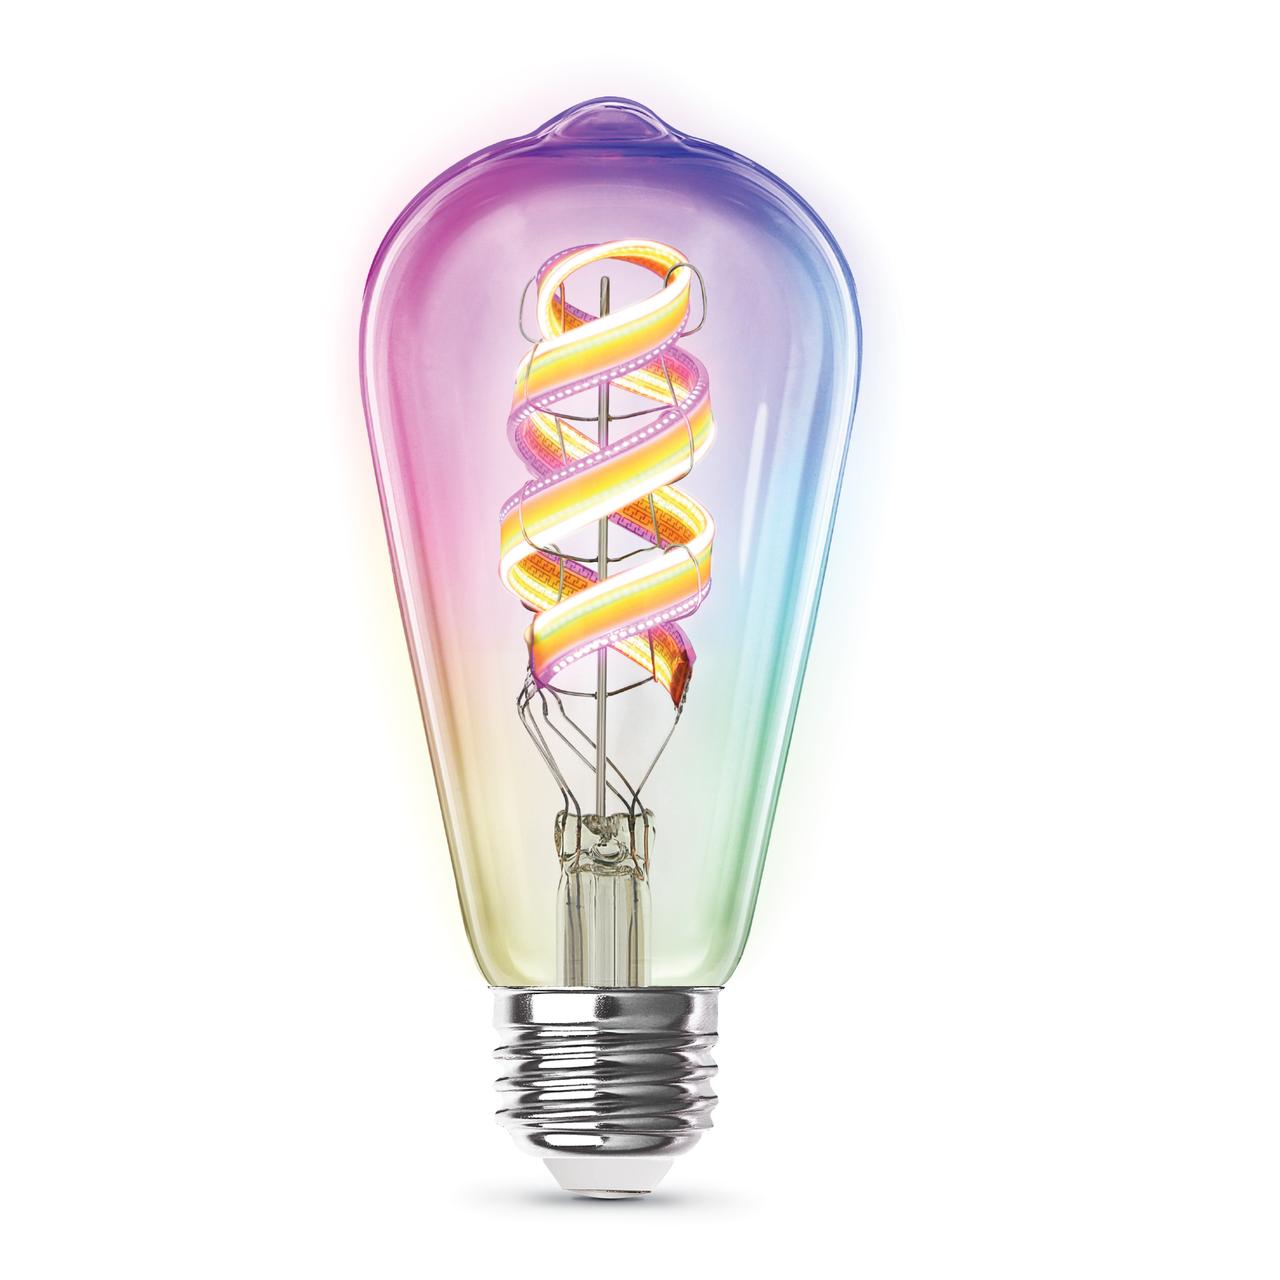 LEDの帯が入ったRGBスマート電球、スマホと音声アシスタントから調光と色も自在に変えられる